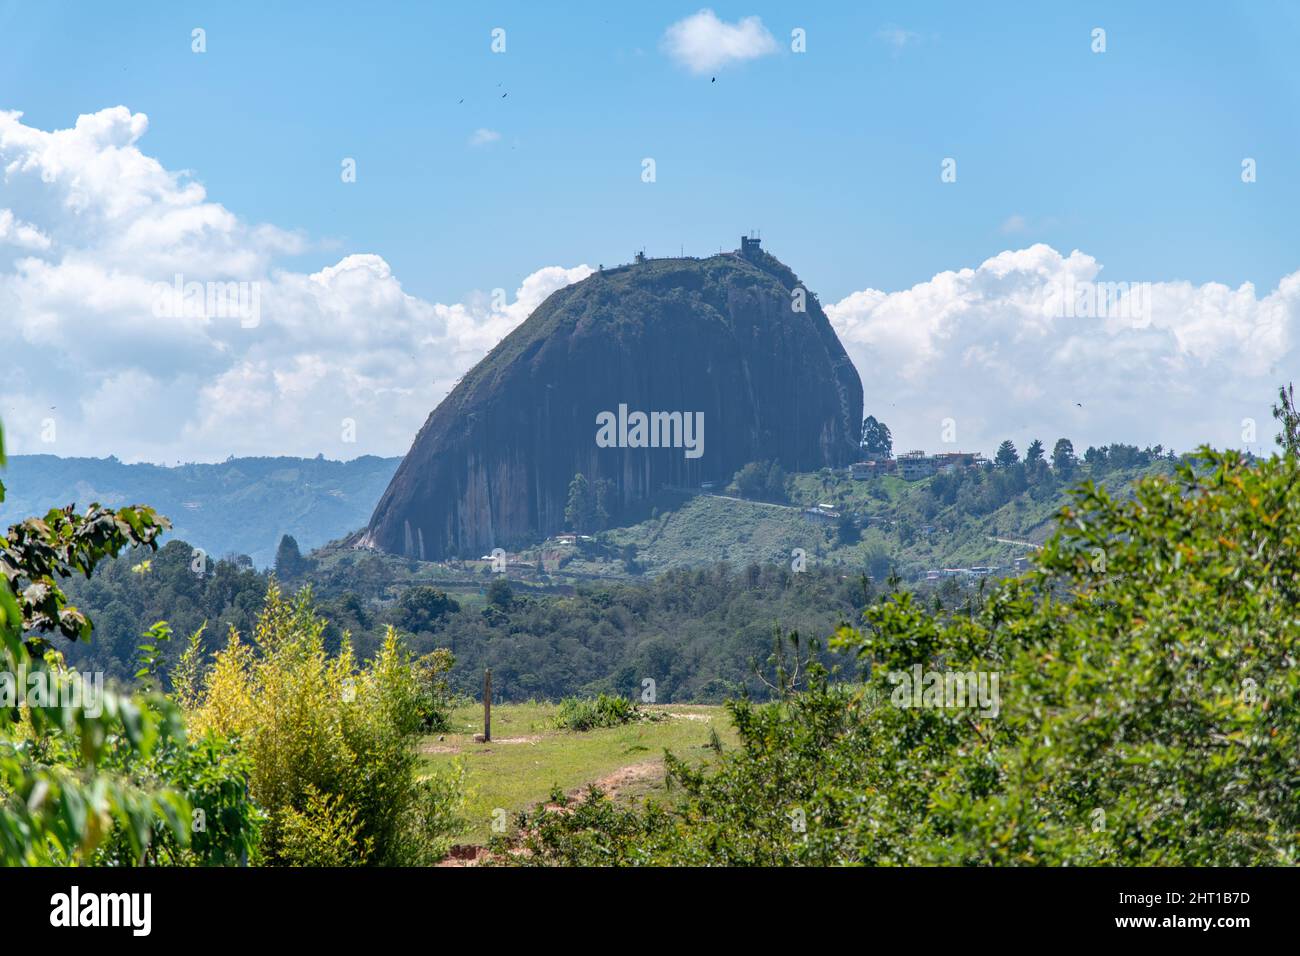 A view of El Penon de Guatape / The Rock of Guatape in Colombia Stock Photo